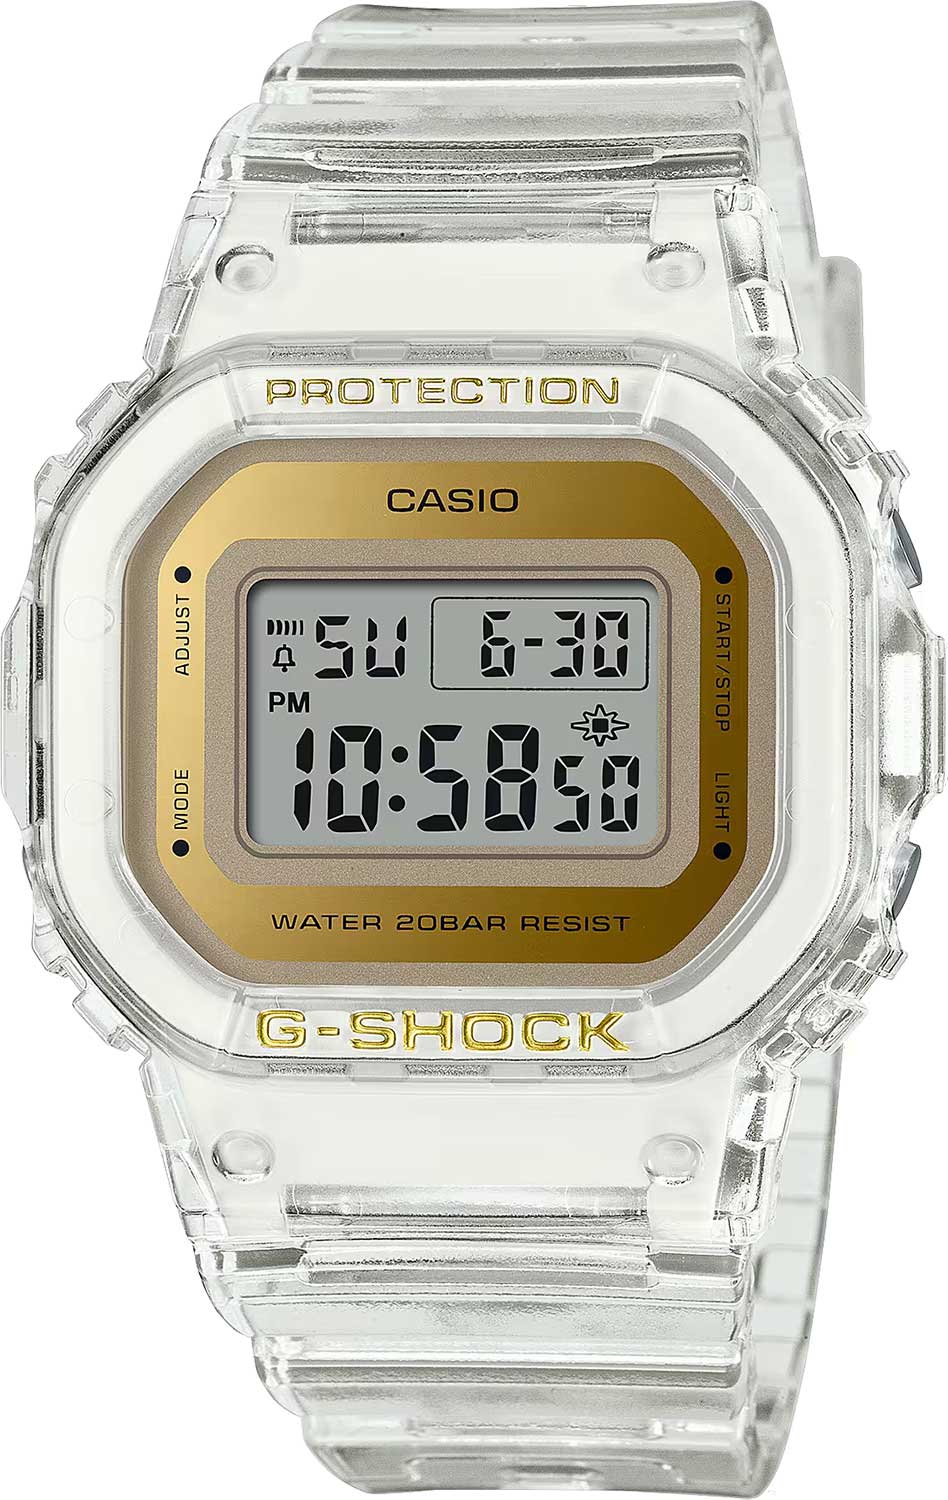    Casio G-SHOCK GMD-S5600SG-7  